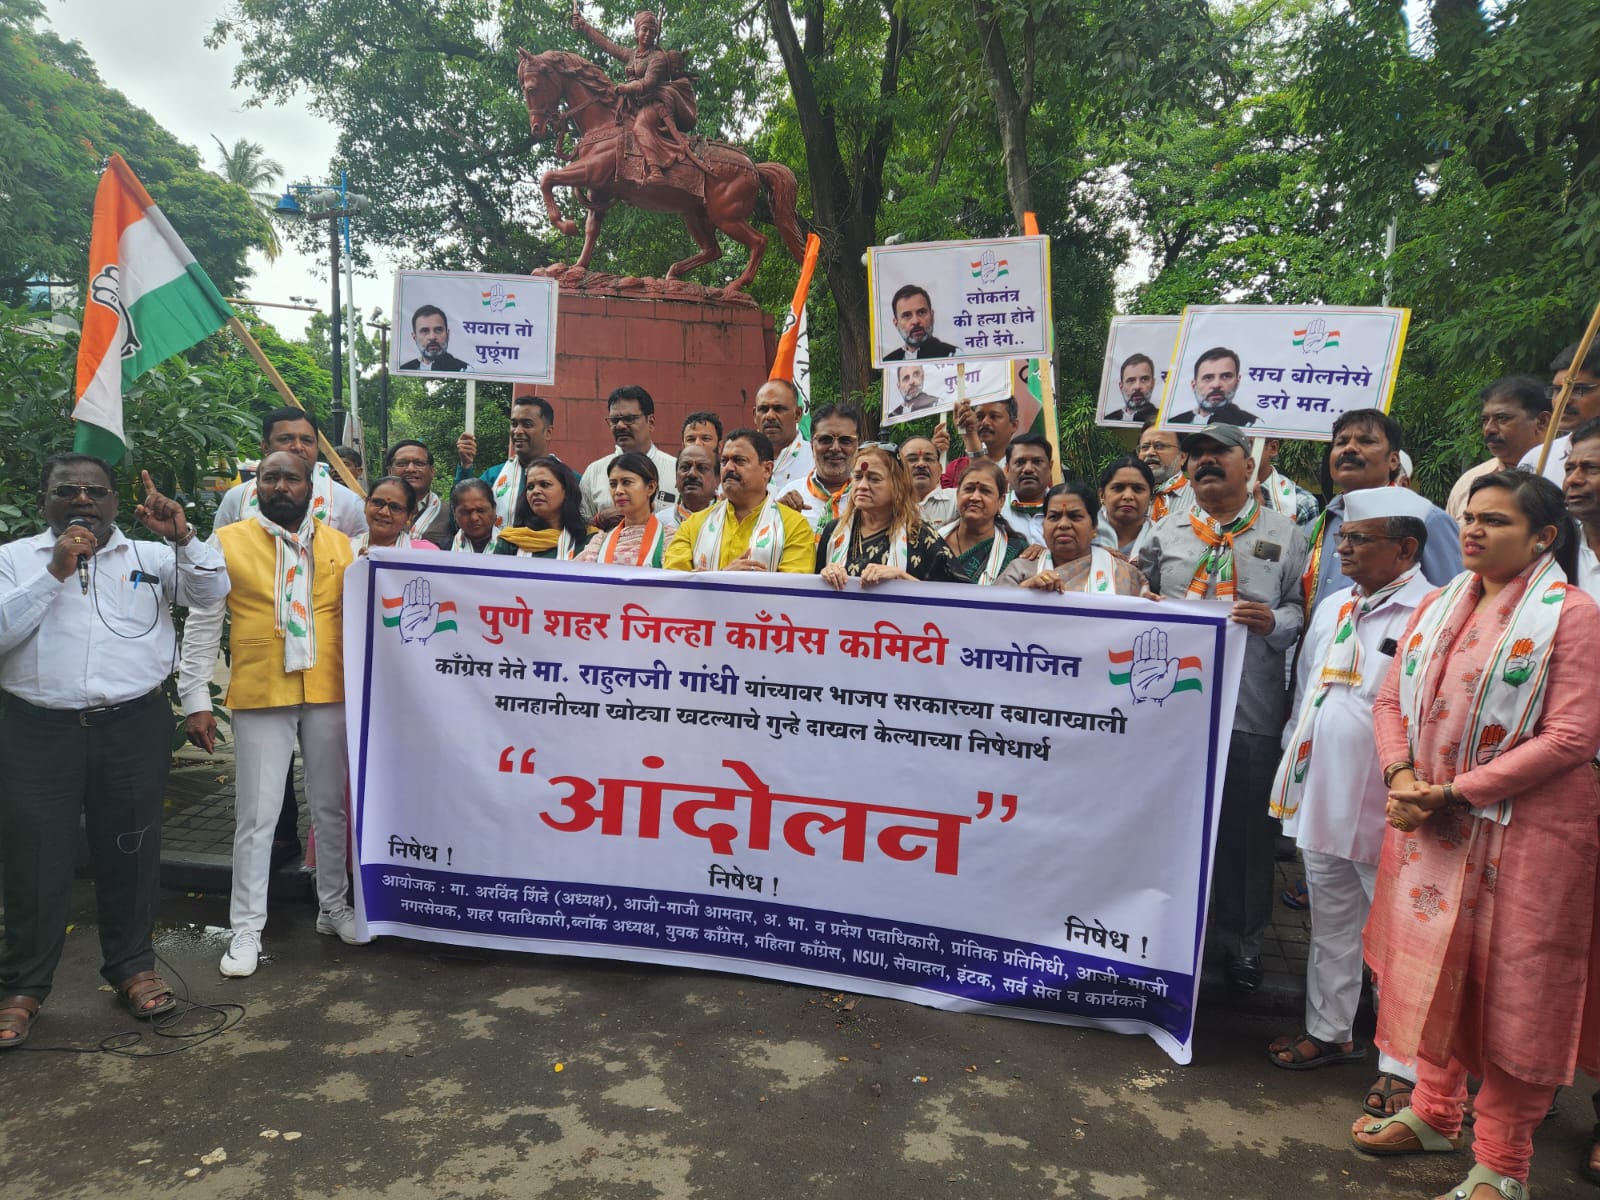 Rahul Gandhi | INC Pune | राहुल गांधी यांच्या समर्थनार्थ  पुणे शहर जिल्हा काँग्रेस कमिटीच्या वतीने आंदोलन